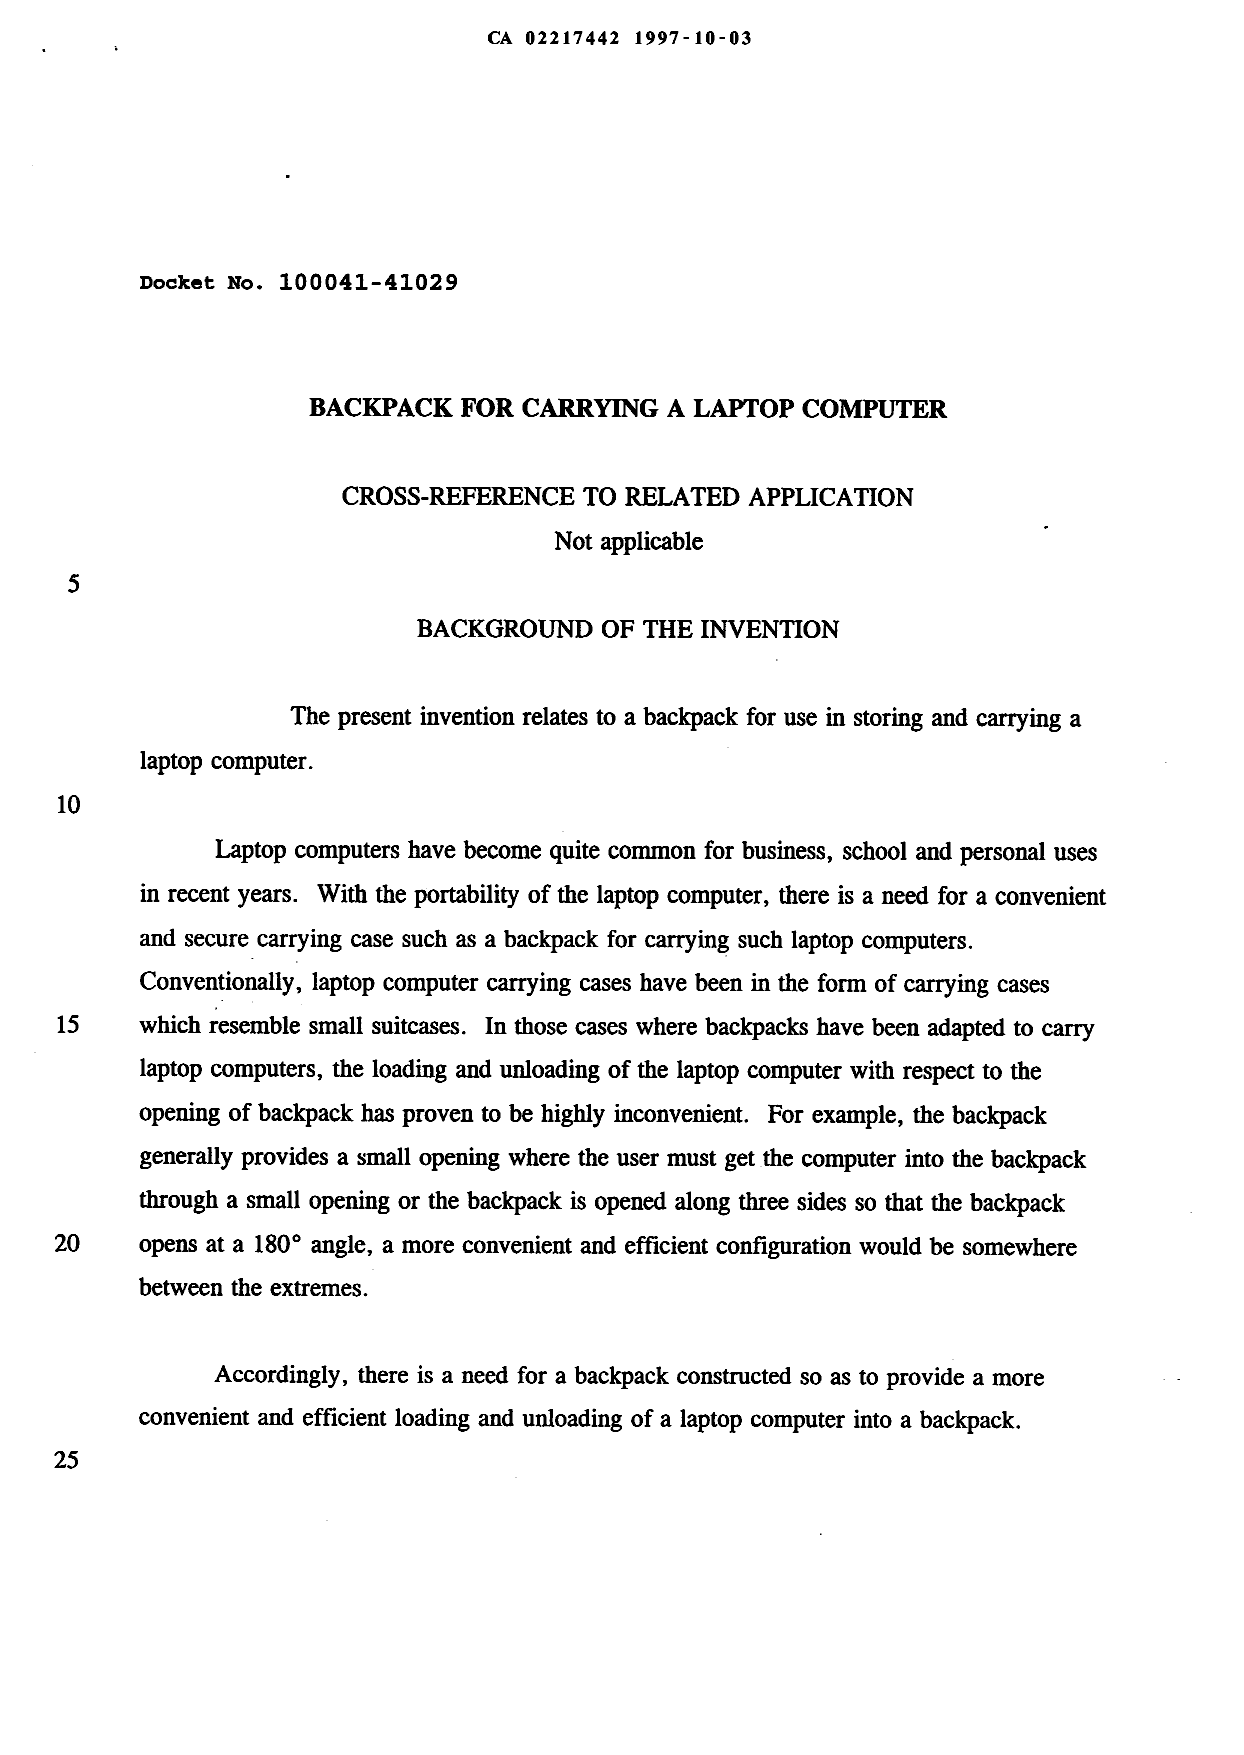 Canadian Patent Document 2217442. Description 19971003. Image 1 of 6